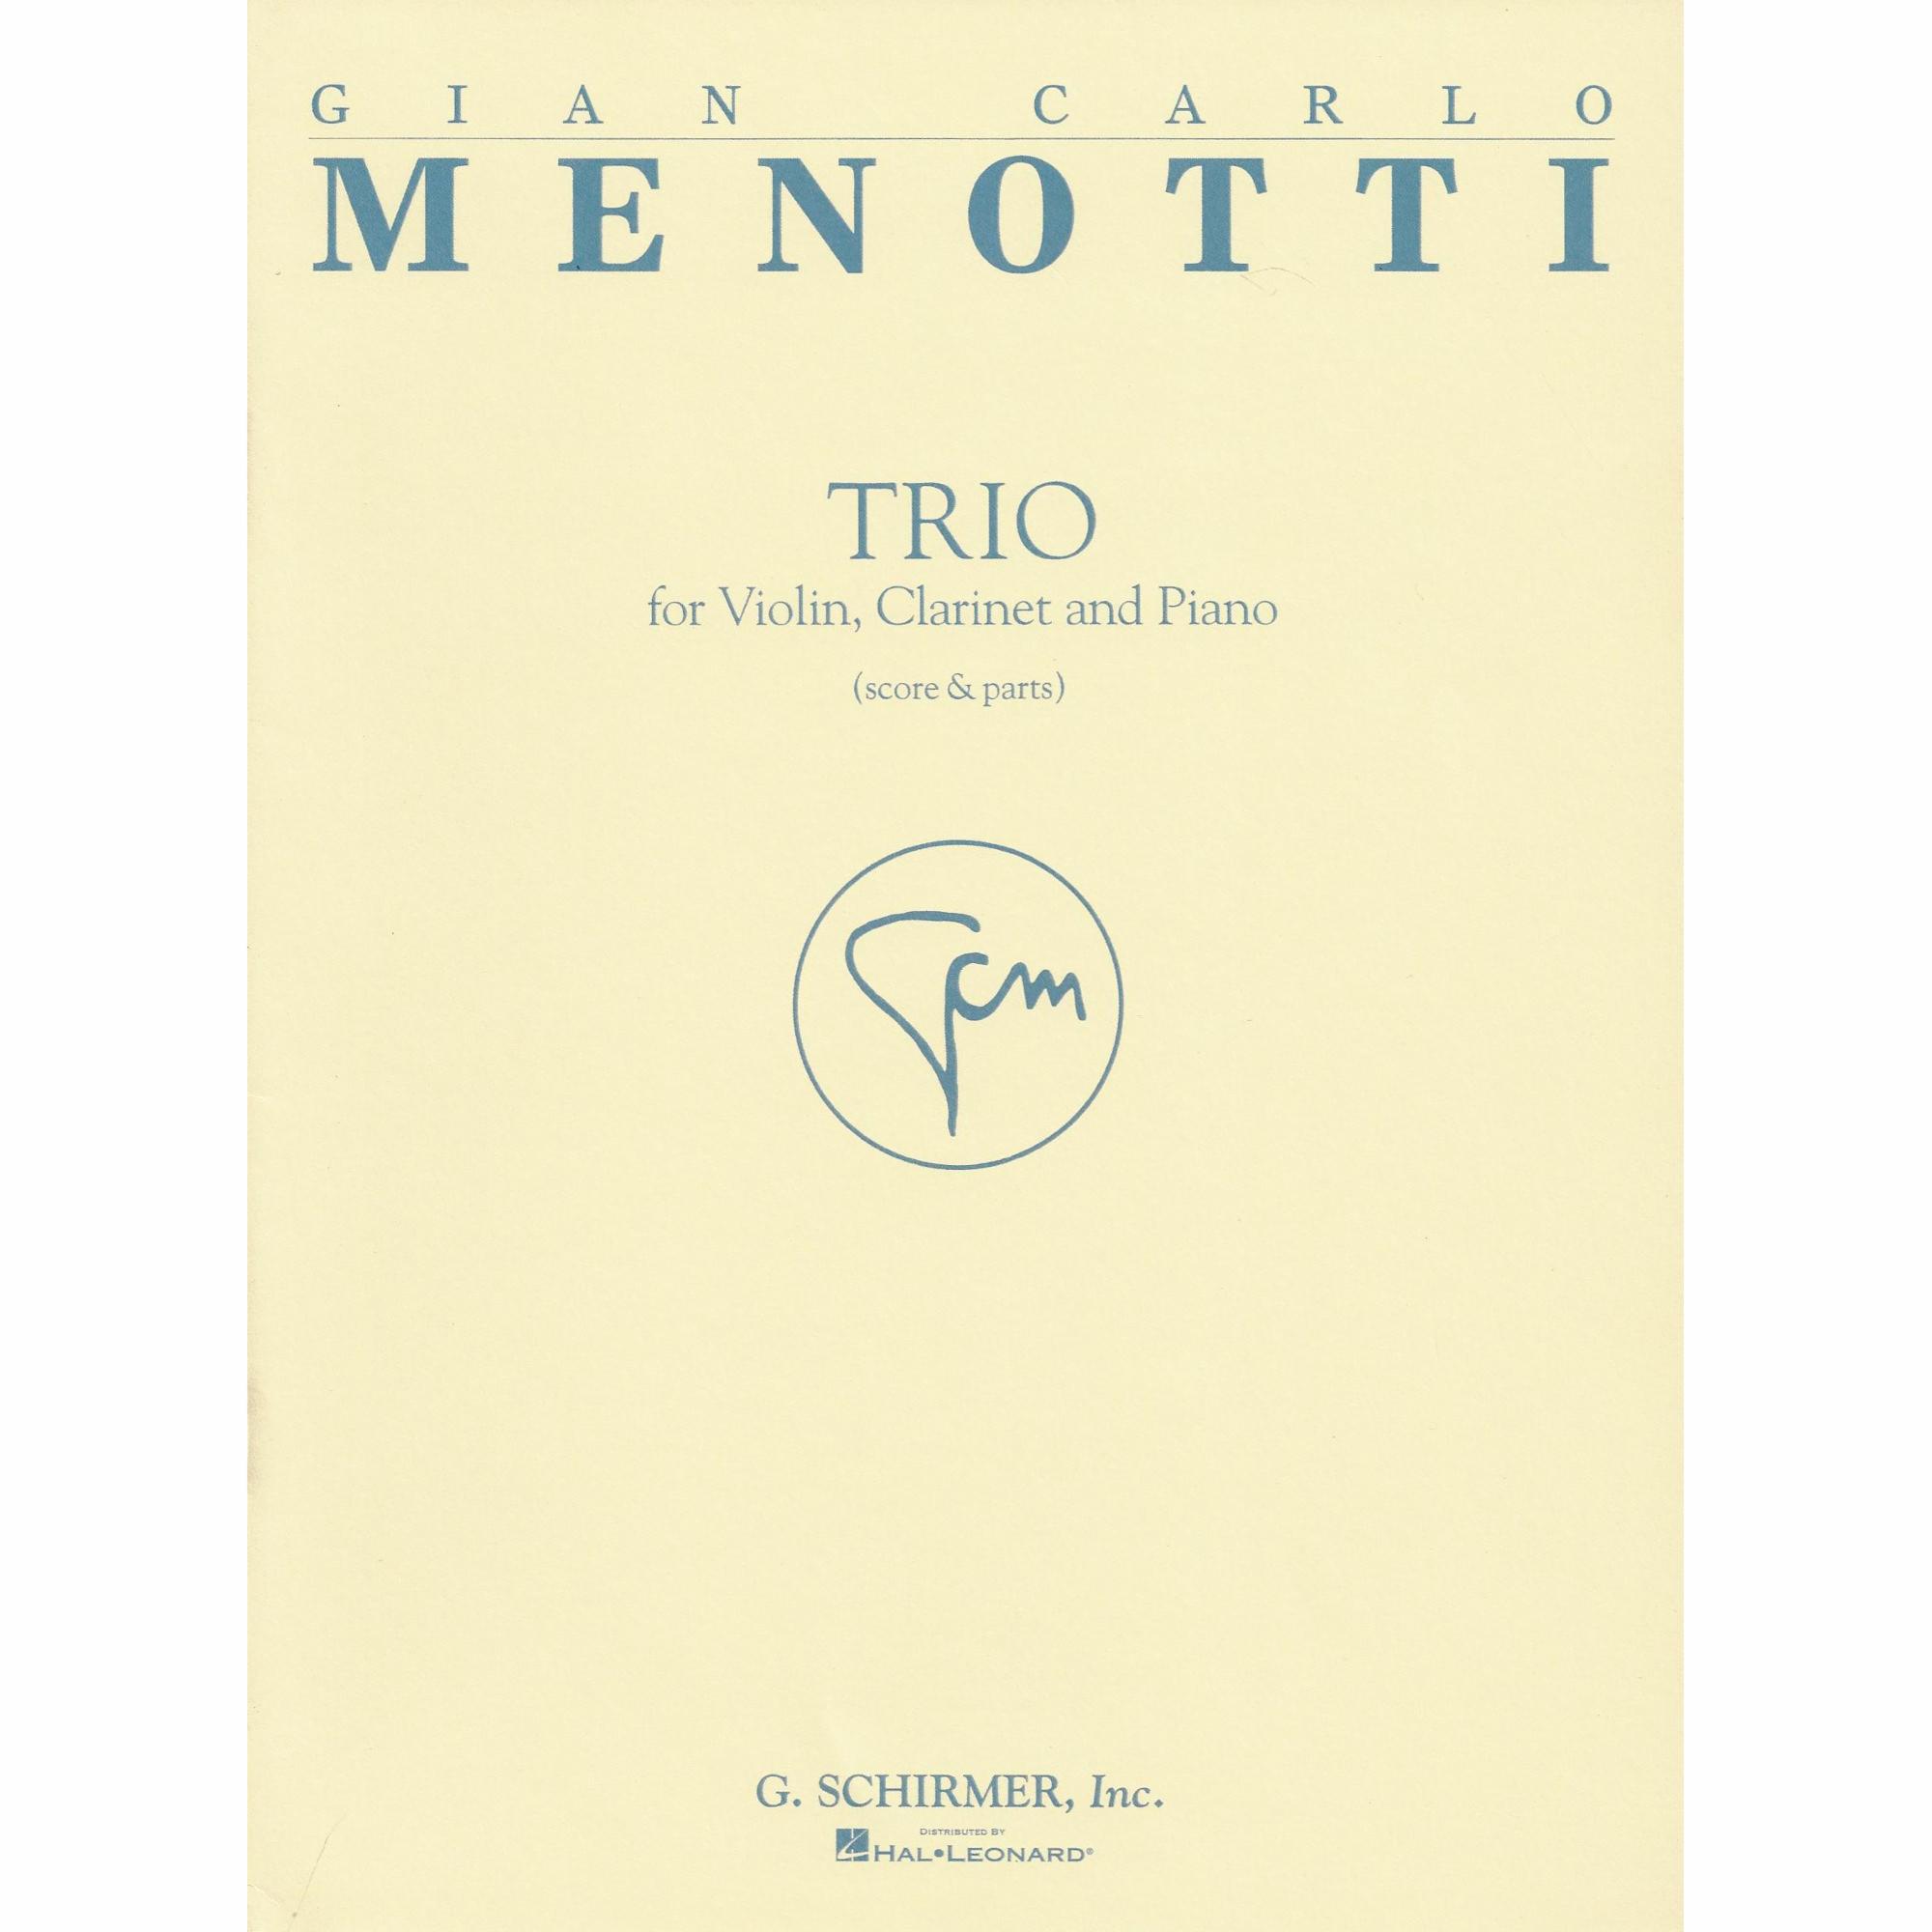 Menotti - Trio for Violin, Clarinet and Piano